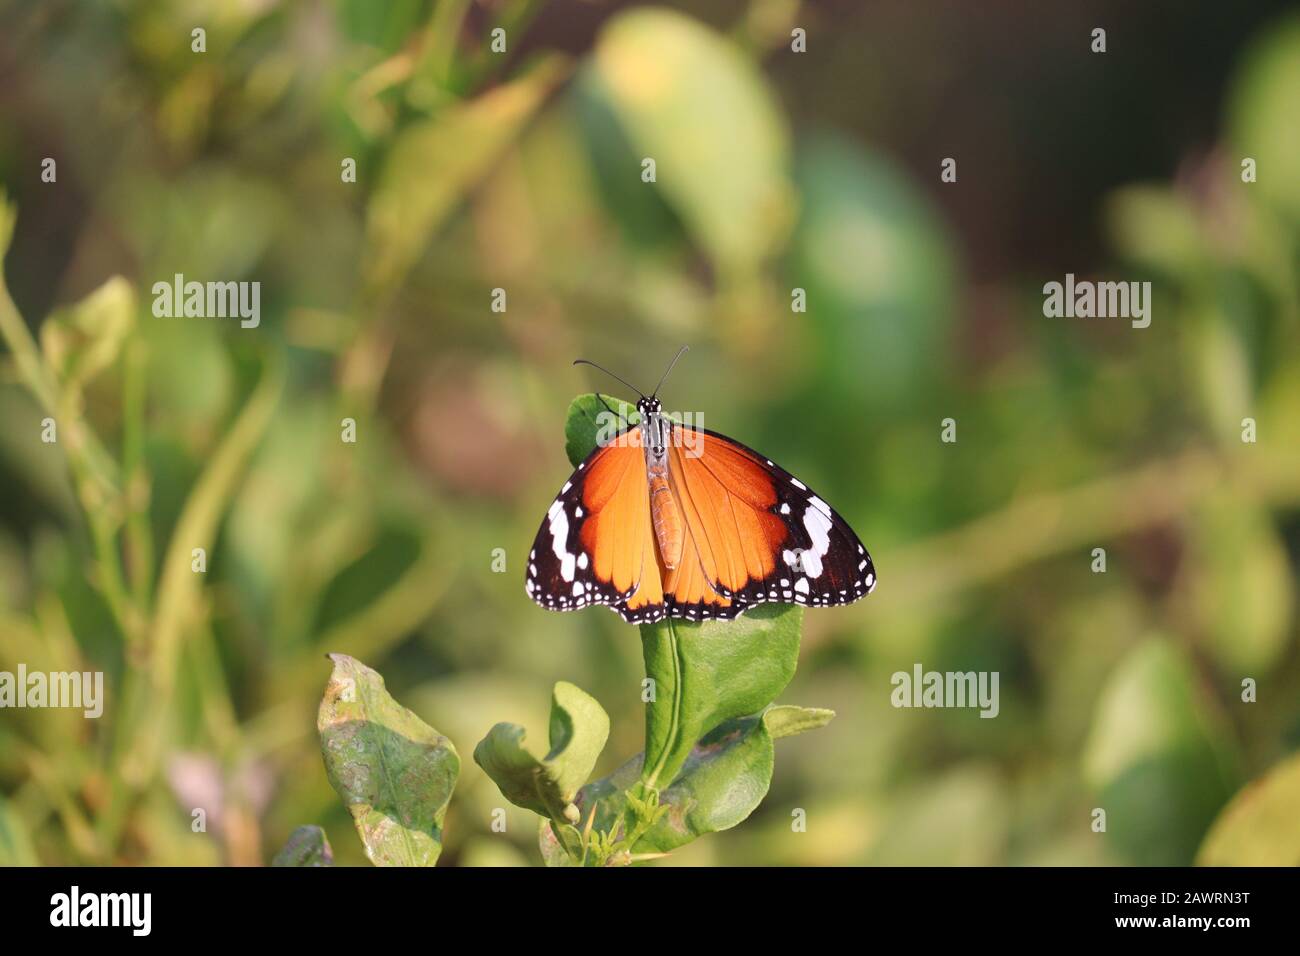 primo piano di una farfalla monarca brillante (farfalla comune) che riposa su foglia verde limone, insetto farfalla all'aperto Foto Stock